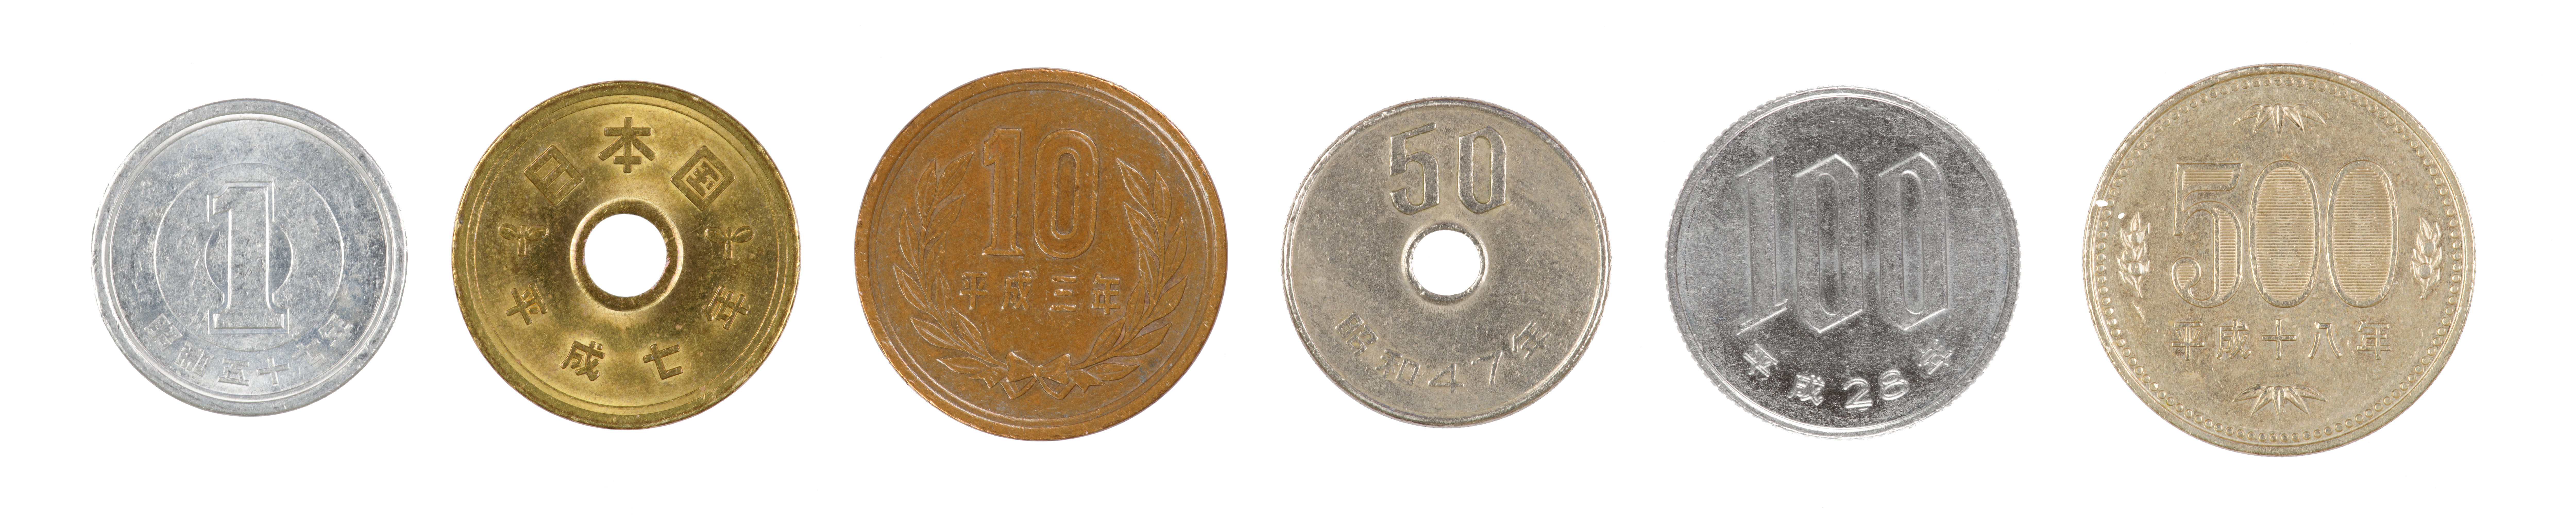 Les pièces japonaises en circulation sont les pièces de 1, 5, 10, 50, 100 et 500 yens. Elles constituent un élément important de la culture et de l'économie du pays.